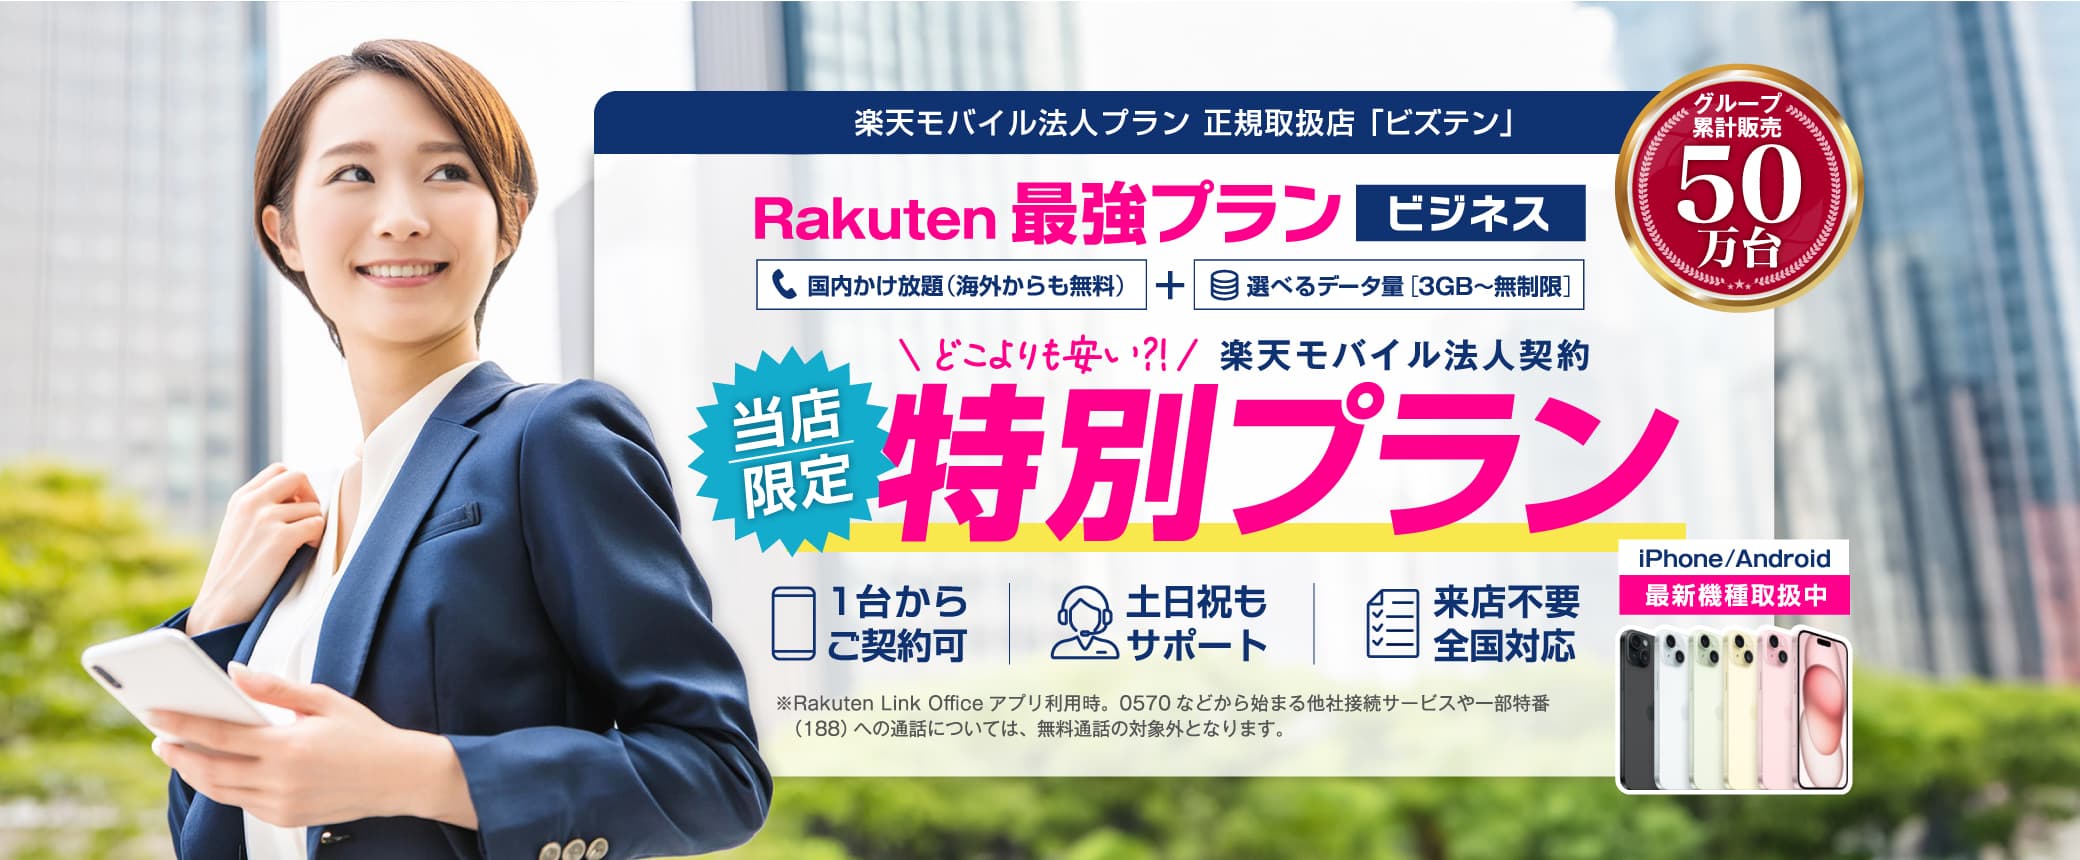 「Rakuten最強プラン ビジネス」当店限定の特別プラン